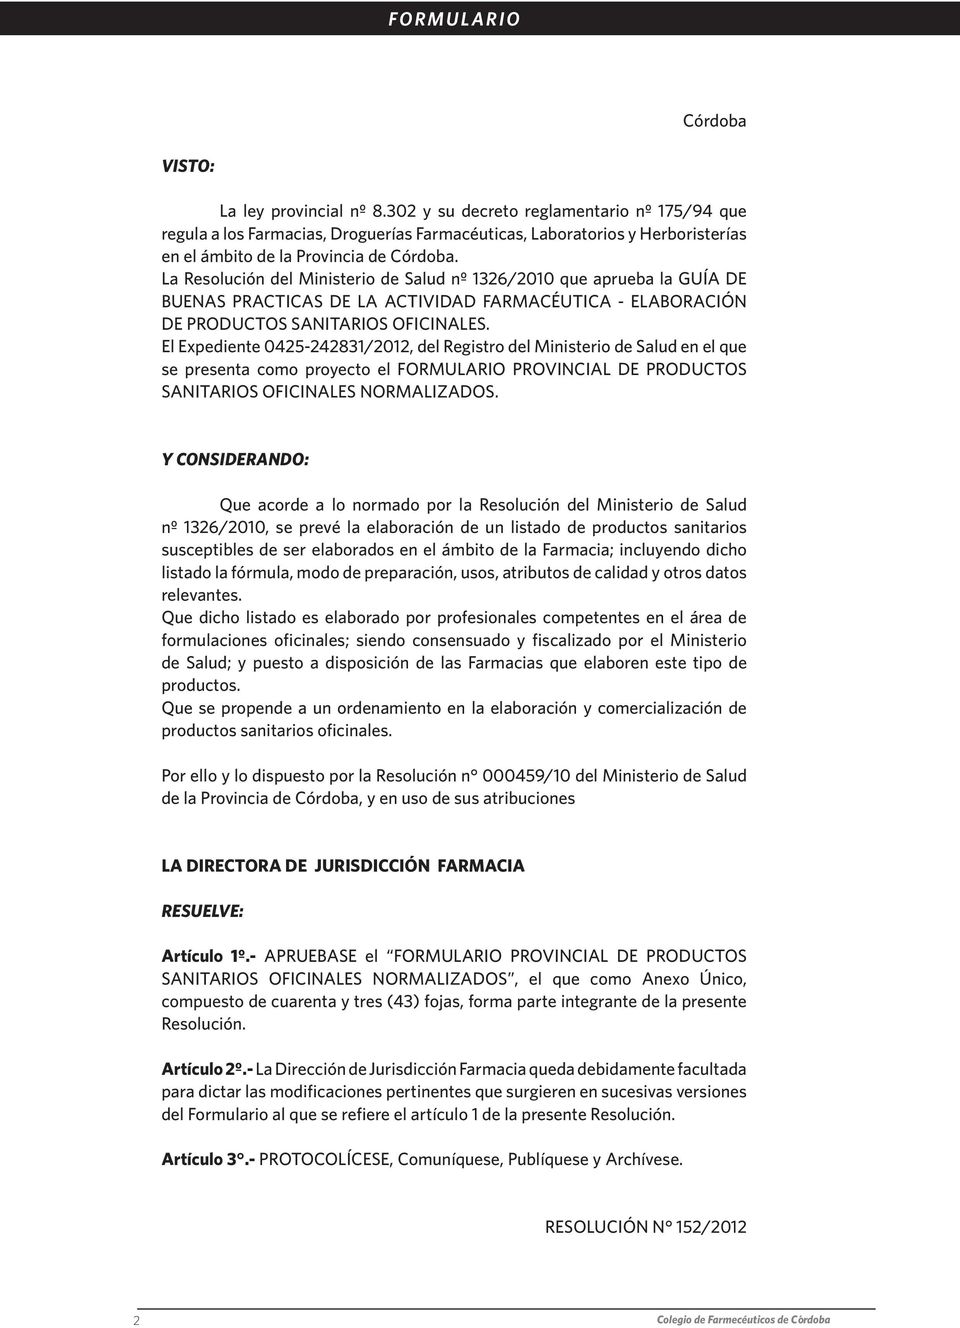 La Resolución del Ministerio de Salud nº 1326/2010 que aprueba la GUÍA DE BUENAS PRACTICAS DE LA ACTIVIDAD FARMACÉUTICA - ELABORACIÓN DE PRODUCTOS SANITARIOS OFICINALES.